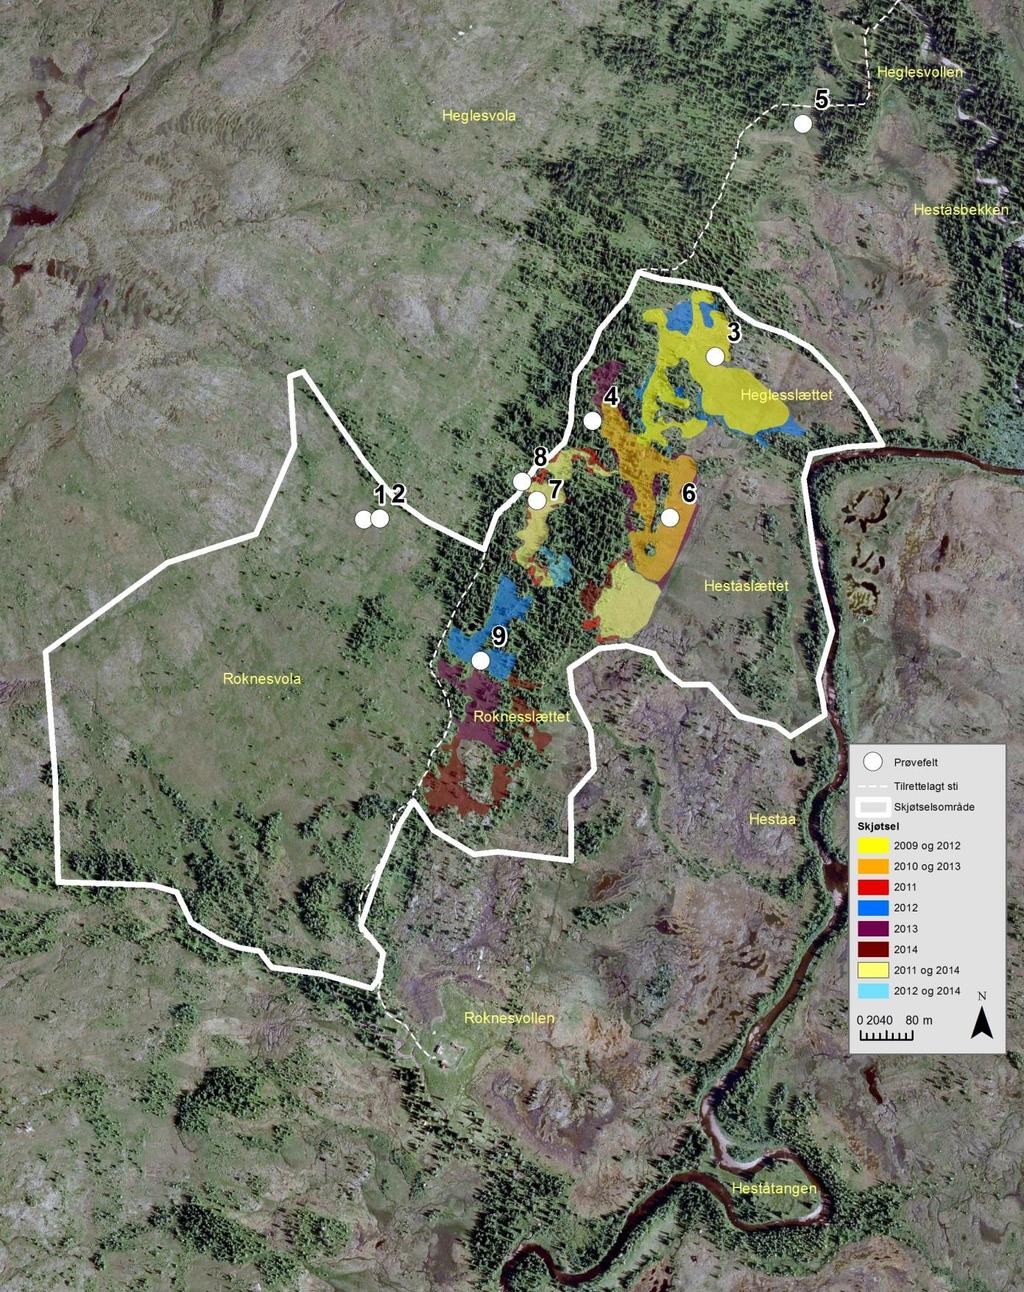 Figur 2. Kart (ortofoto) over deler av Øvre Forra naturreservat med avgrensing av skjøtselsområdet, skjøtselsareal 2009-